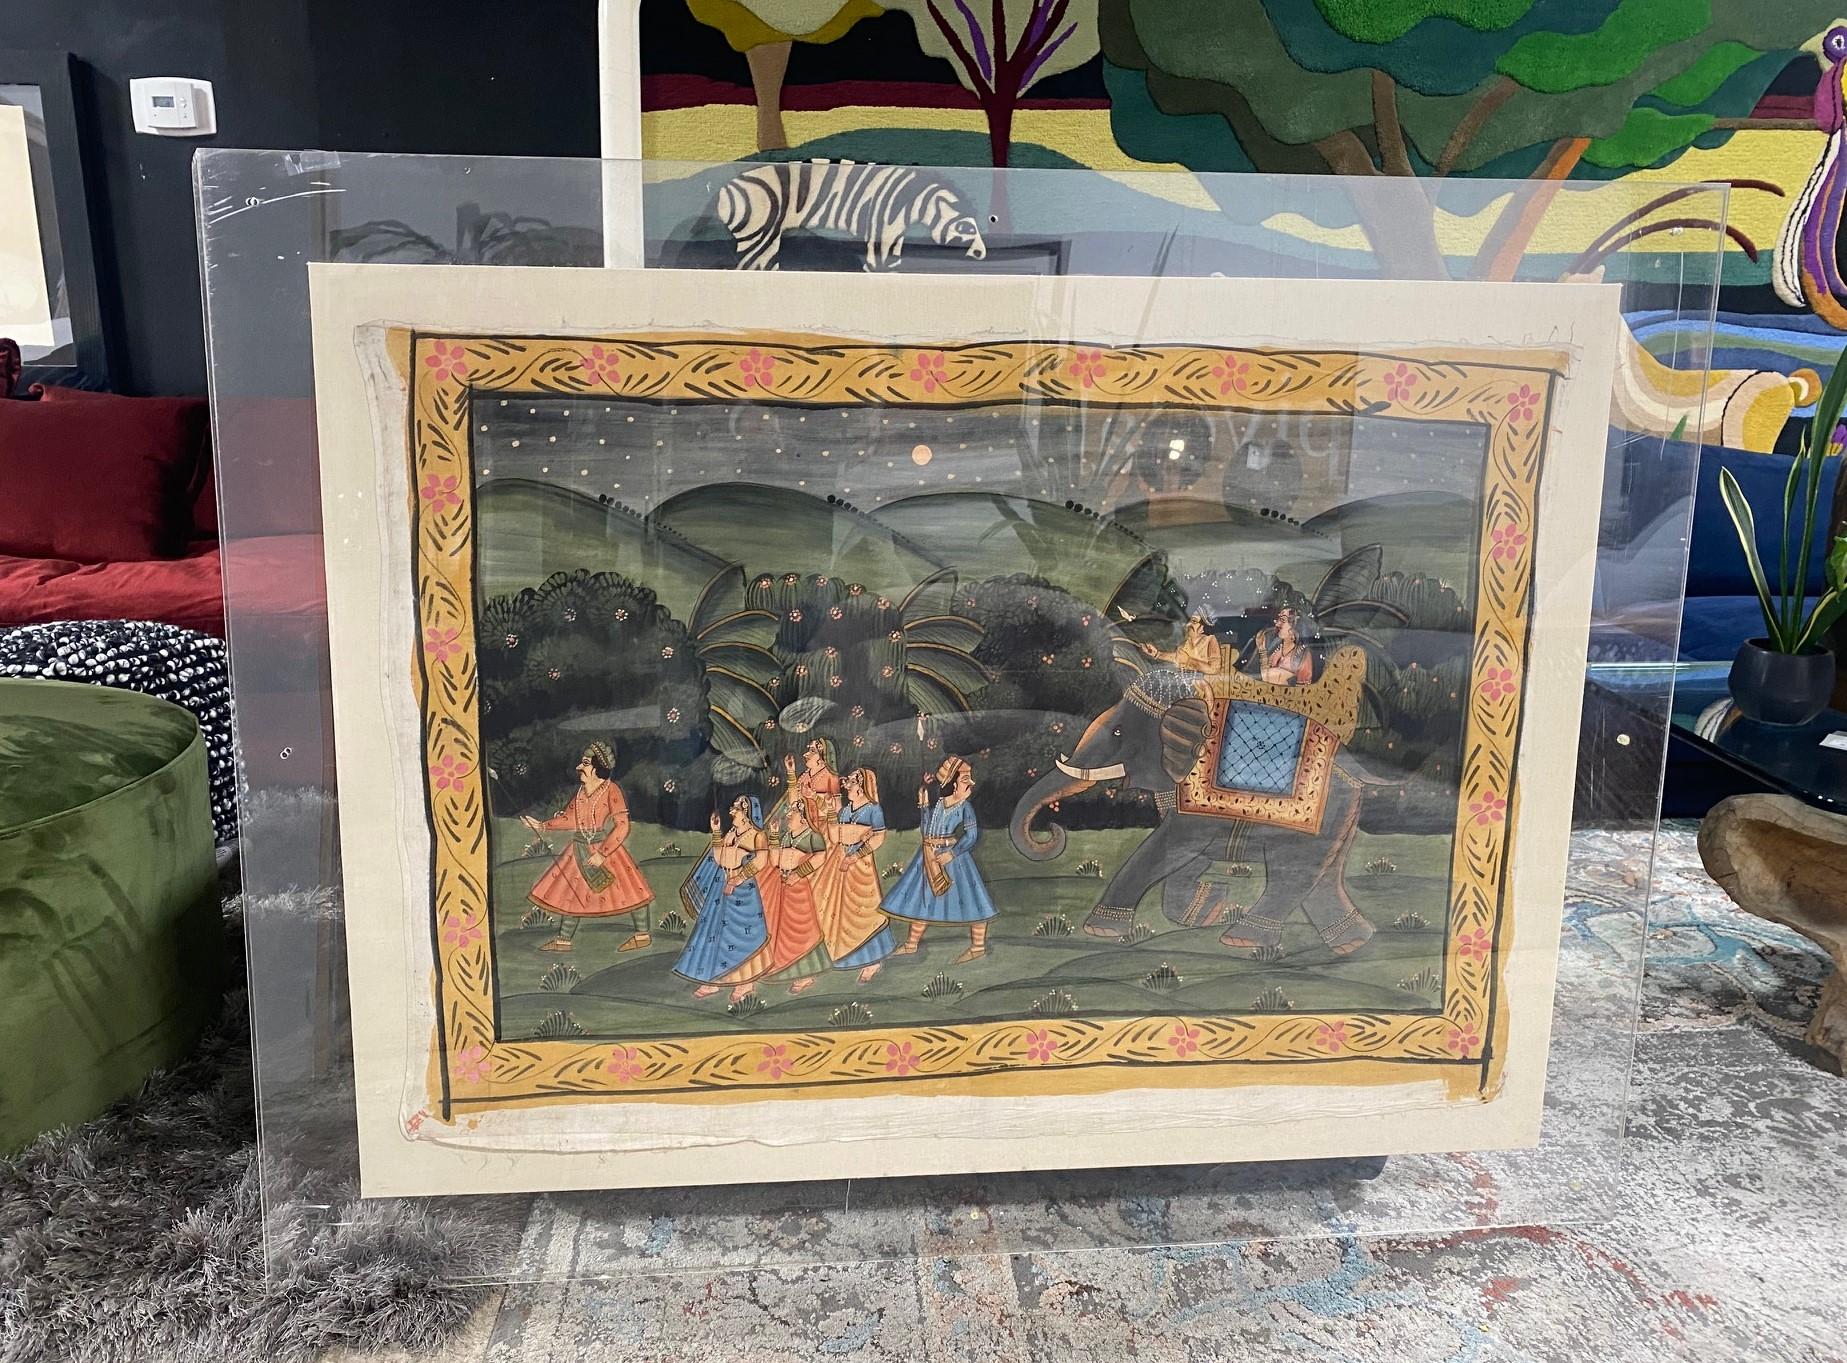 Magnifique peinture à la gouache et/ou au pichwai de l'Asie du sud de l'Inde (Inde) dans un cadre acrylique lourd à deux côtés, représentant une procession royale du soir d'un Maharaja (peut-être une cérémonie de mariage) avec un couple royal à dos